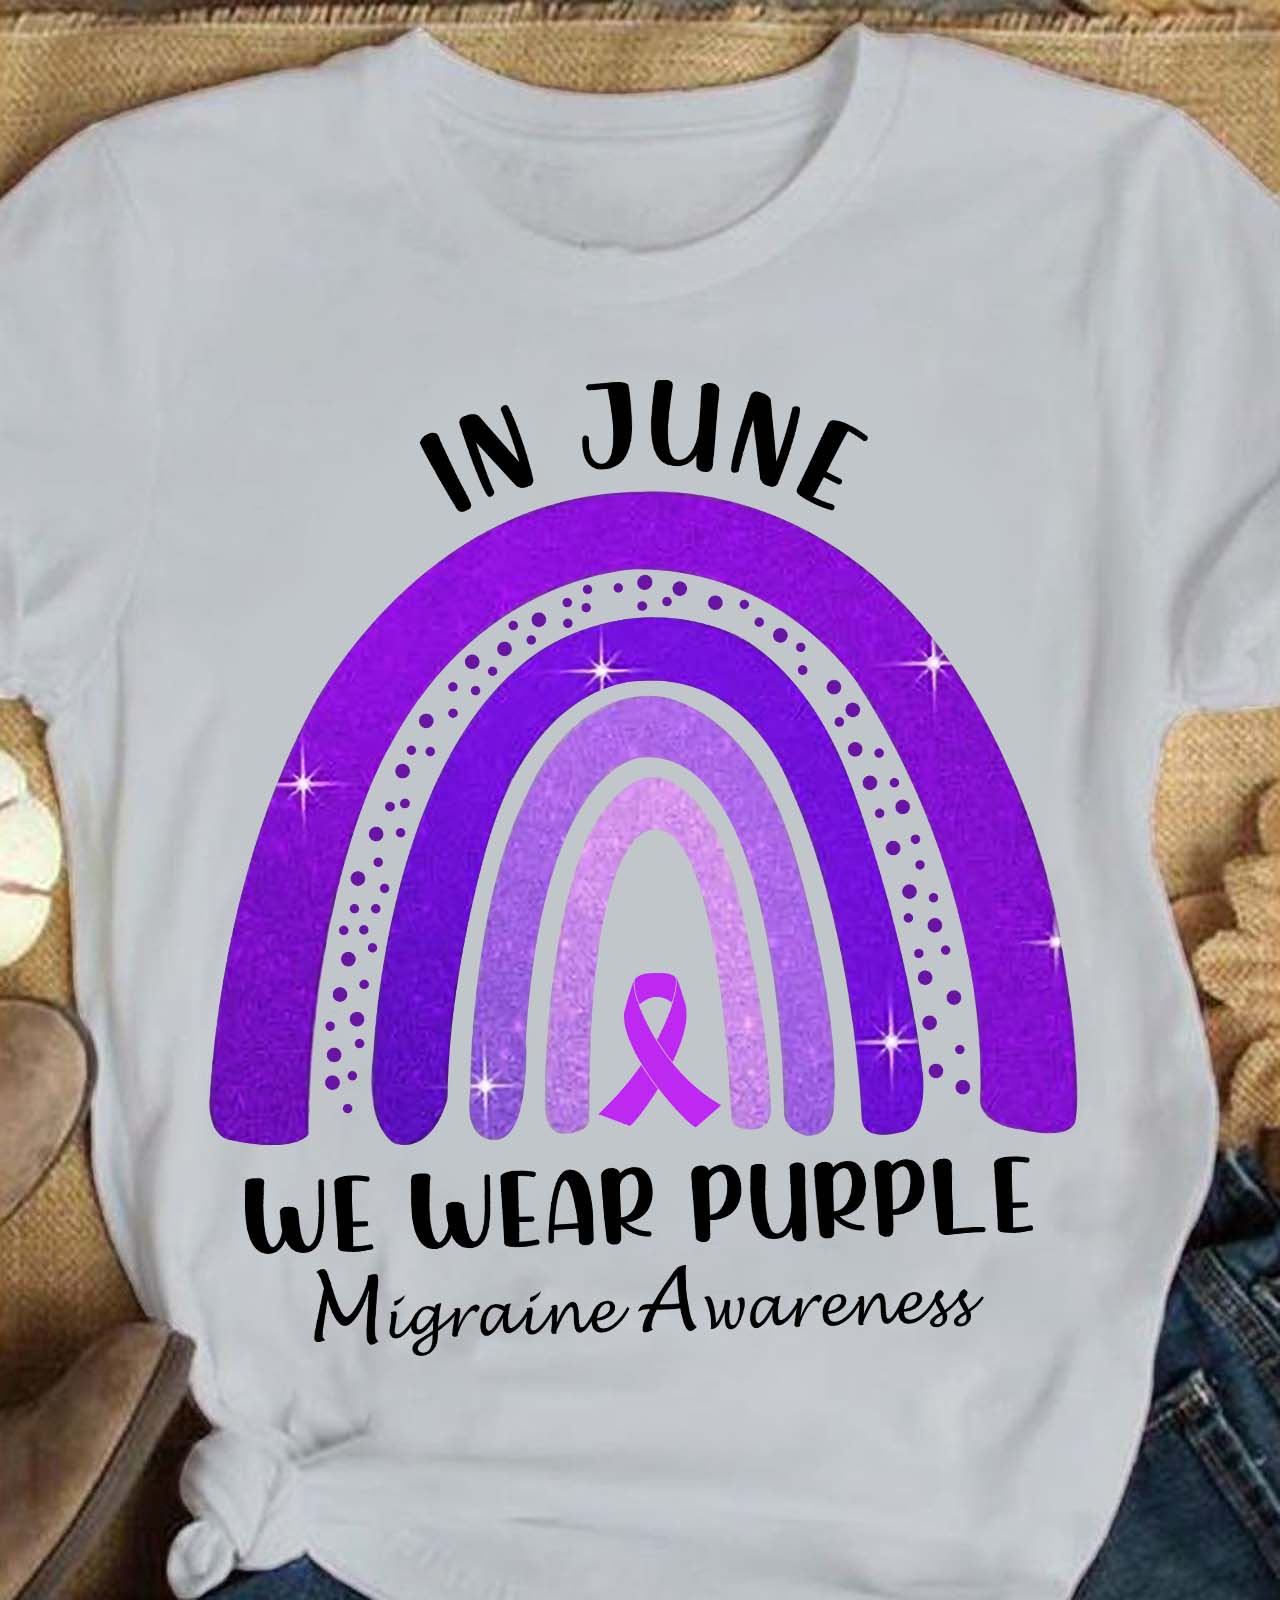 In june we wear purple - Migraine Awareness